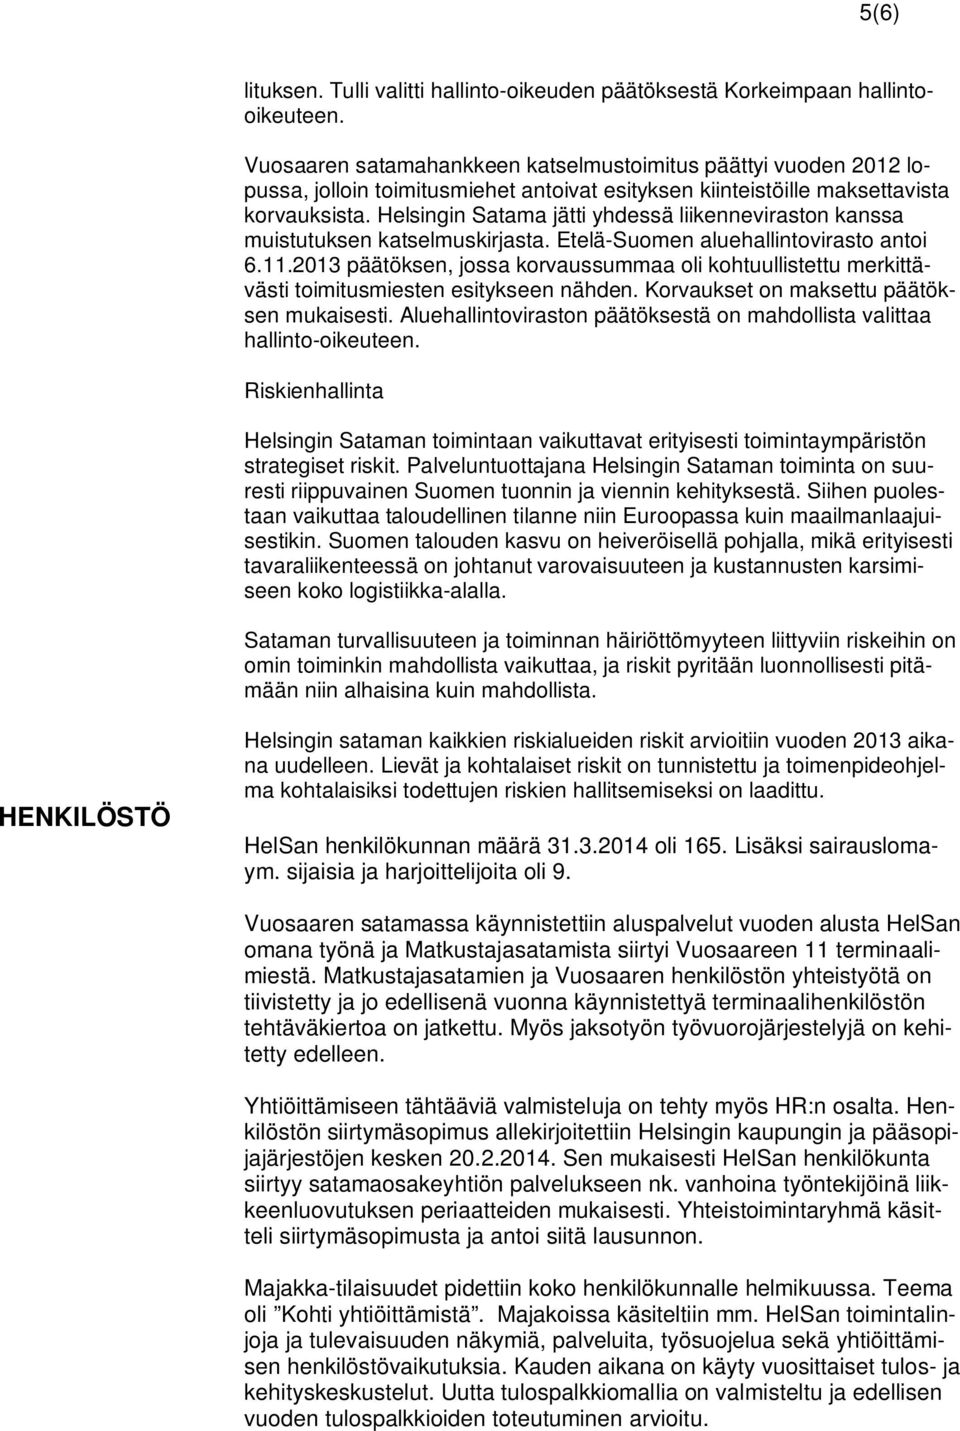 Helsingin Satama jätti yhdessä liikenneviraston kanssa muistutuksen katselmuskirjasta. Etelä-Suomen aluehallintovirasto antoi 6.11.